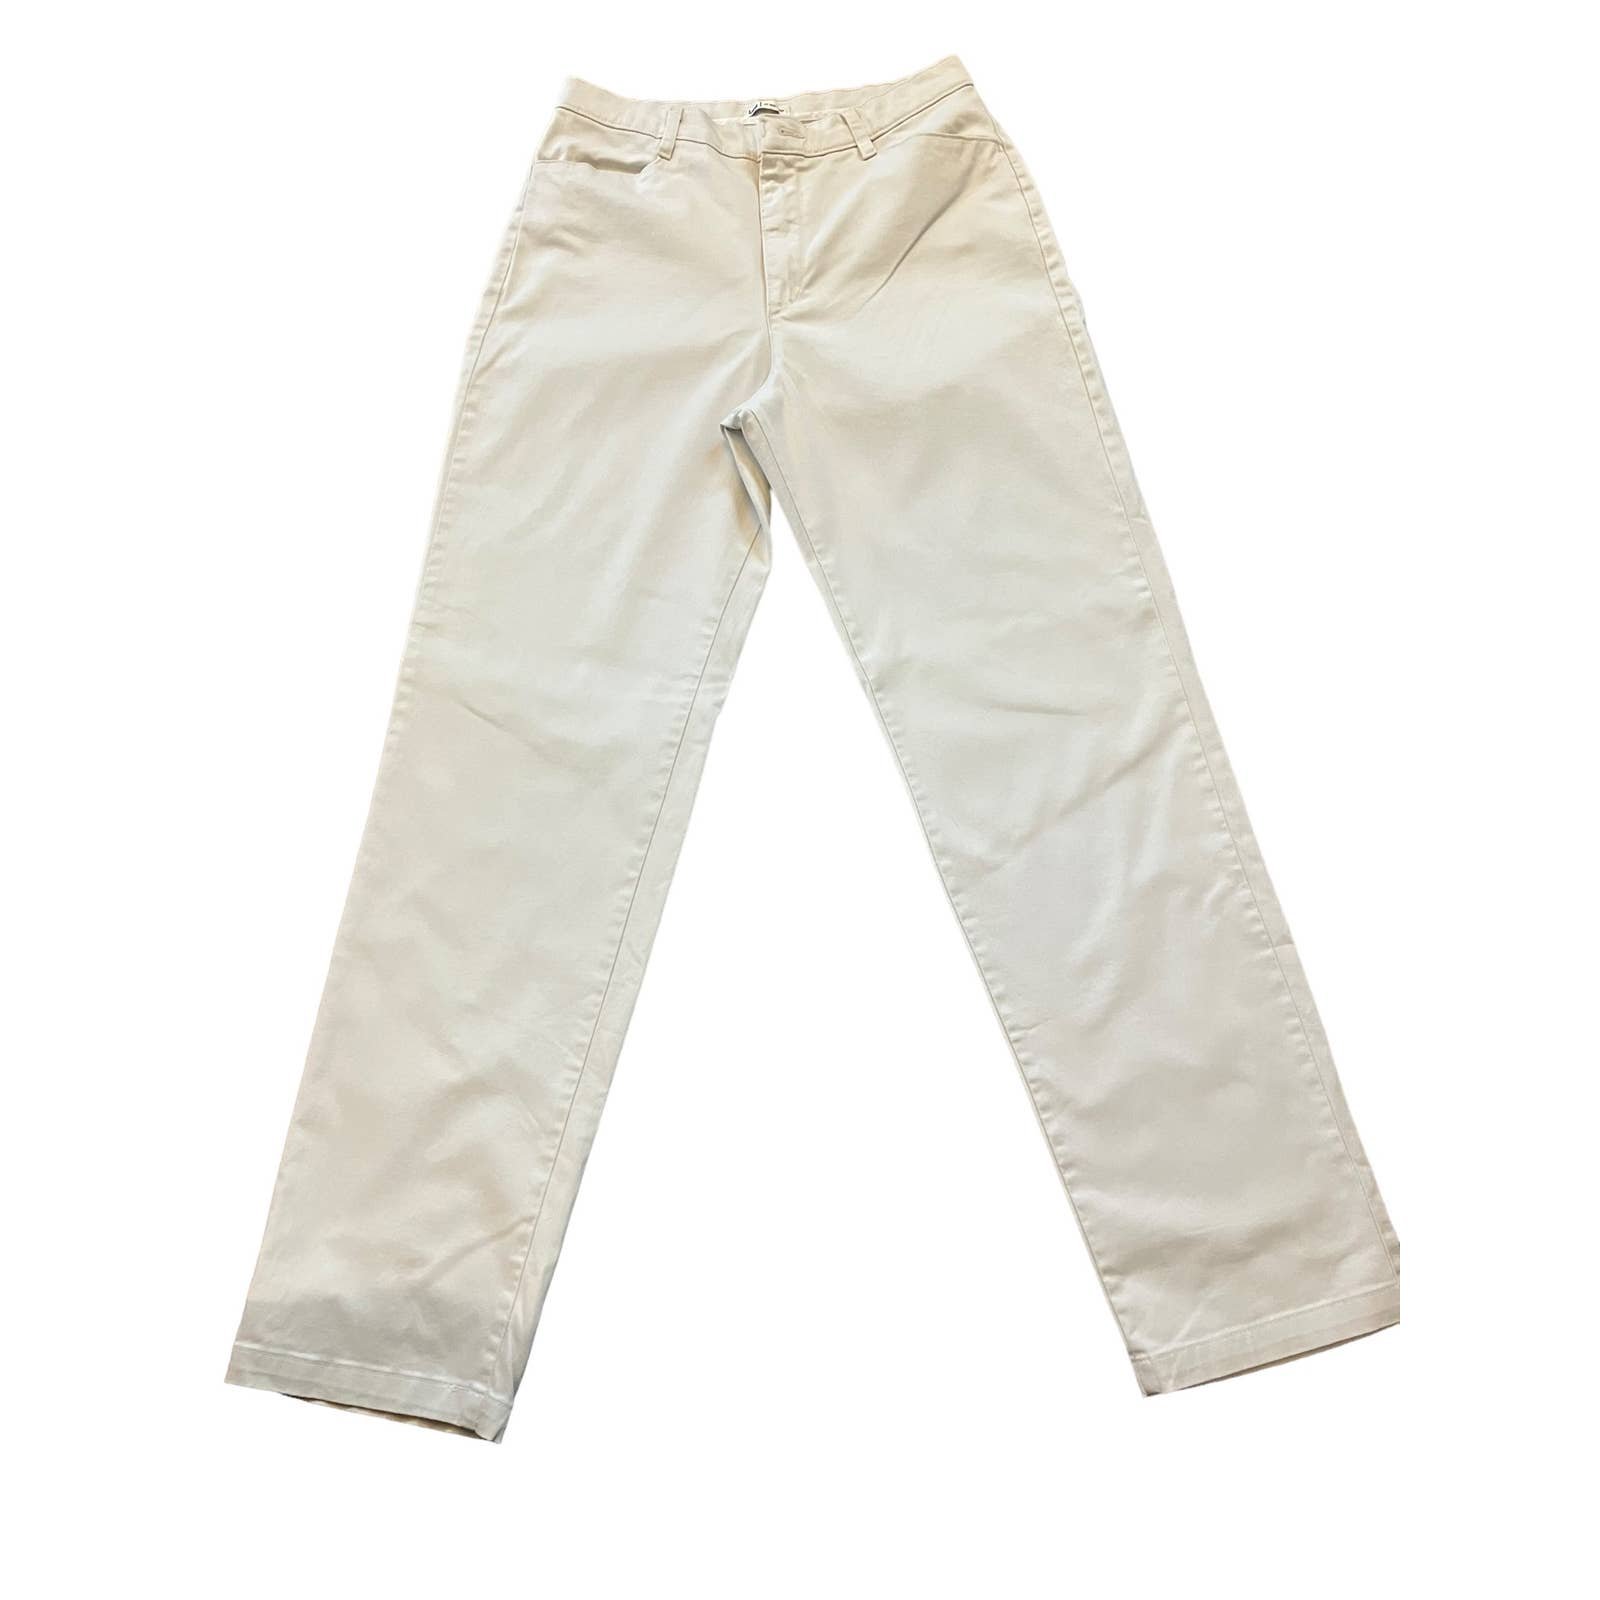 Comfortable Lee Women´s Straight Leg Khaki Colored Pants | Size 12L HUJAEdqVI just buy it